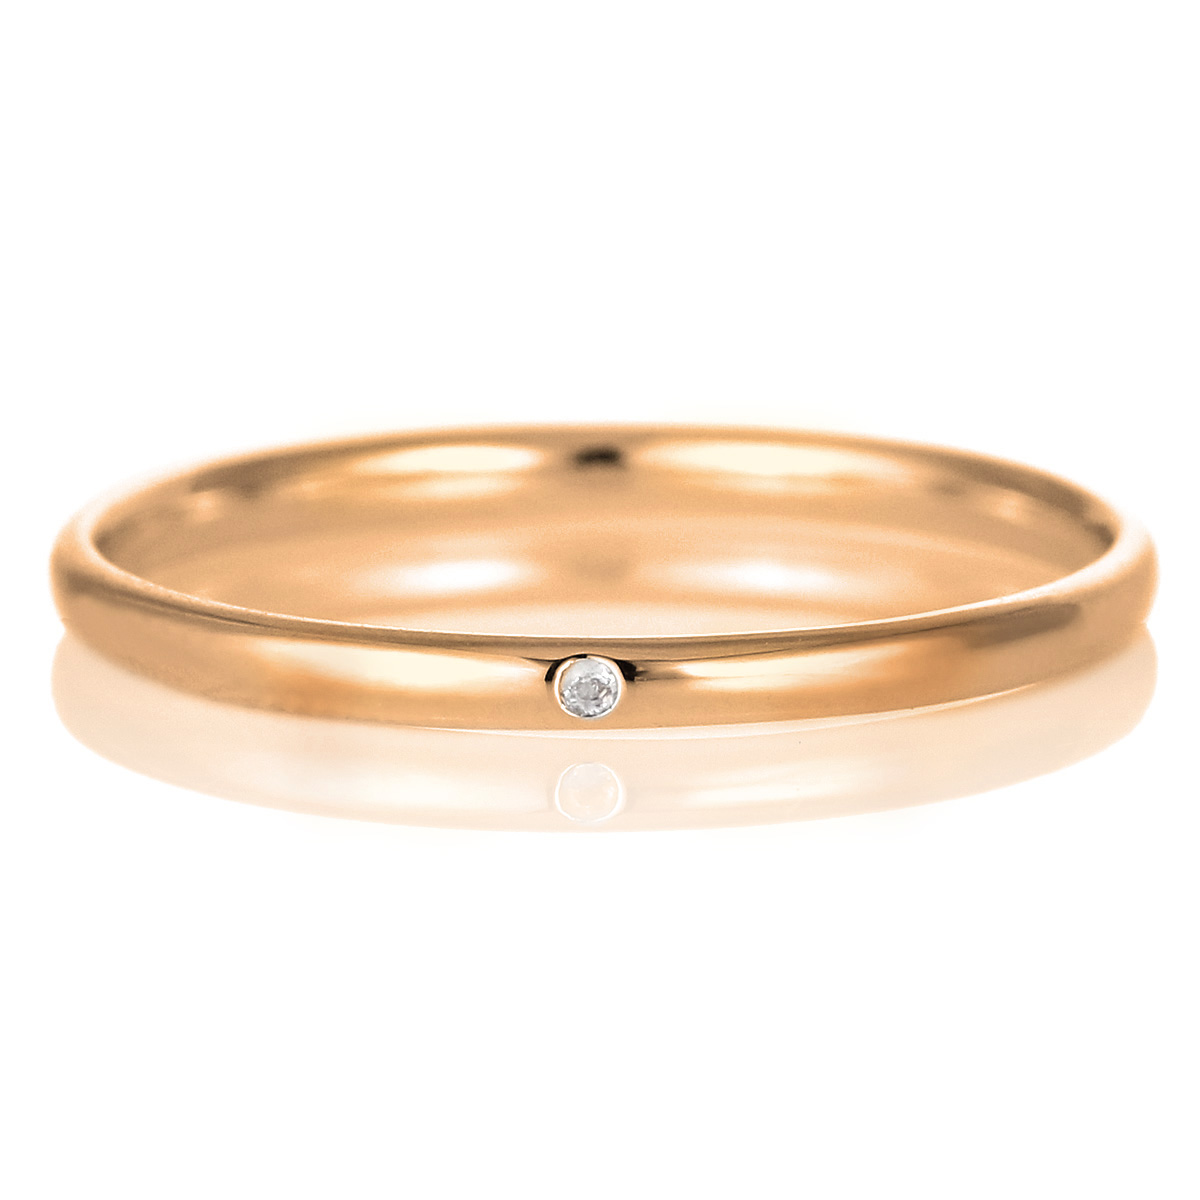 結婚指輪 マリッジリング 18金 ピンクゴールド 甲丸 天然石 ムーンストーン